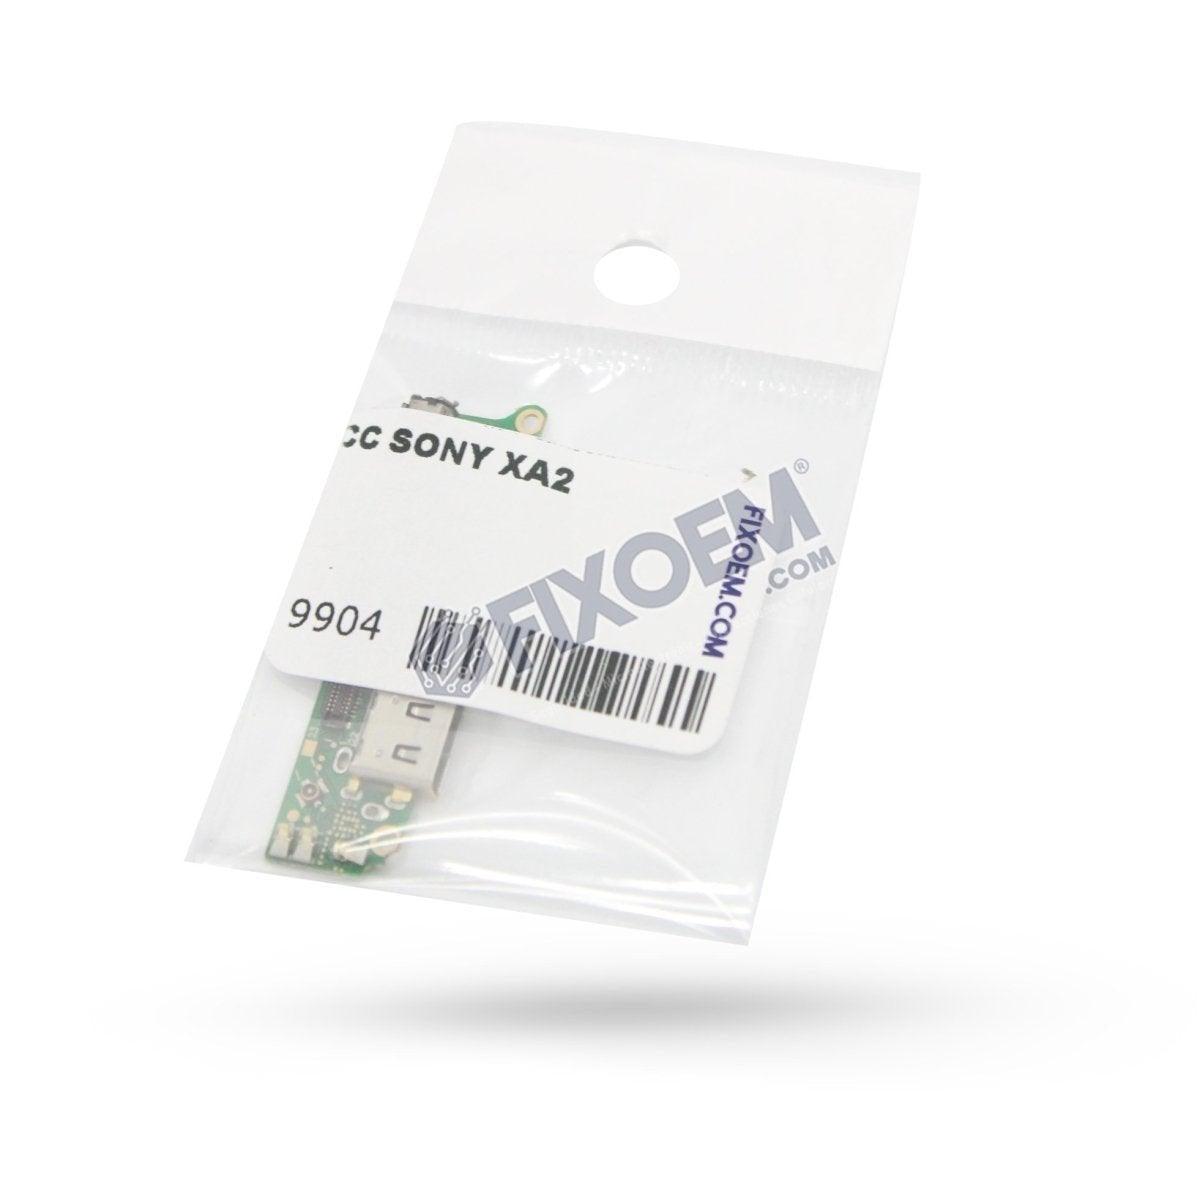 Centro Carga Sony Xa2. a solo $ 170.00 Refaccion y puestos celulares, refurbish y microelectronica.- FixOEM